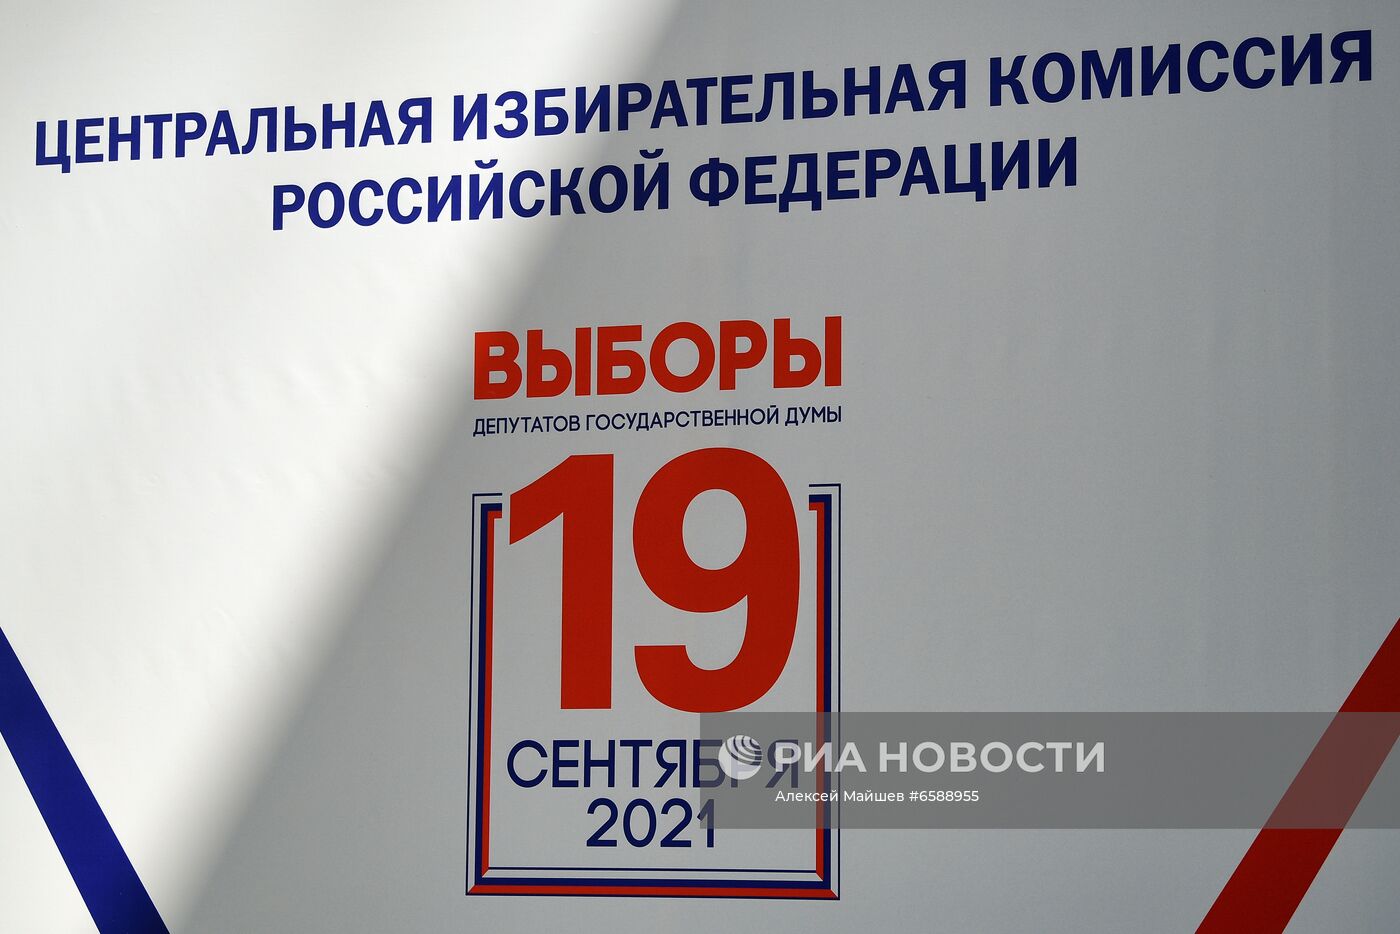 Подача документов партией КПРФ для регистрации кандидатов в депутаты Госдумы РФ